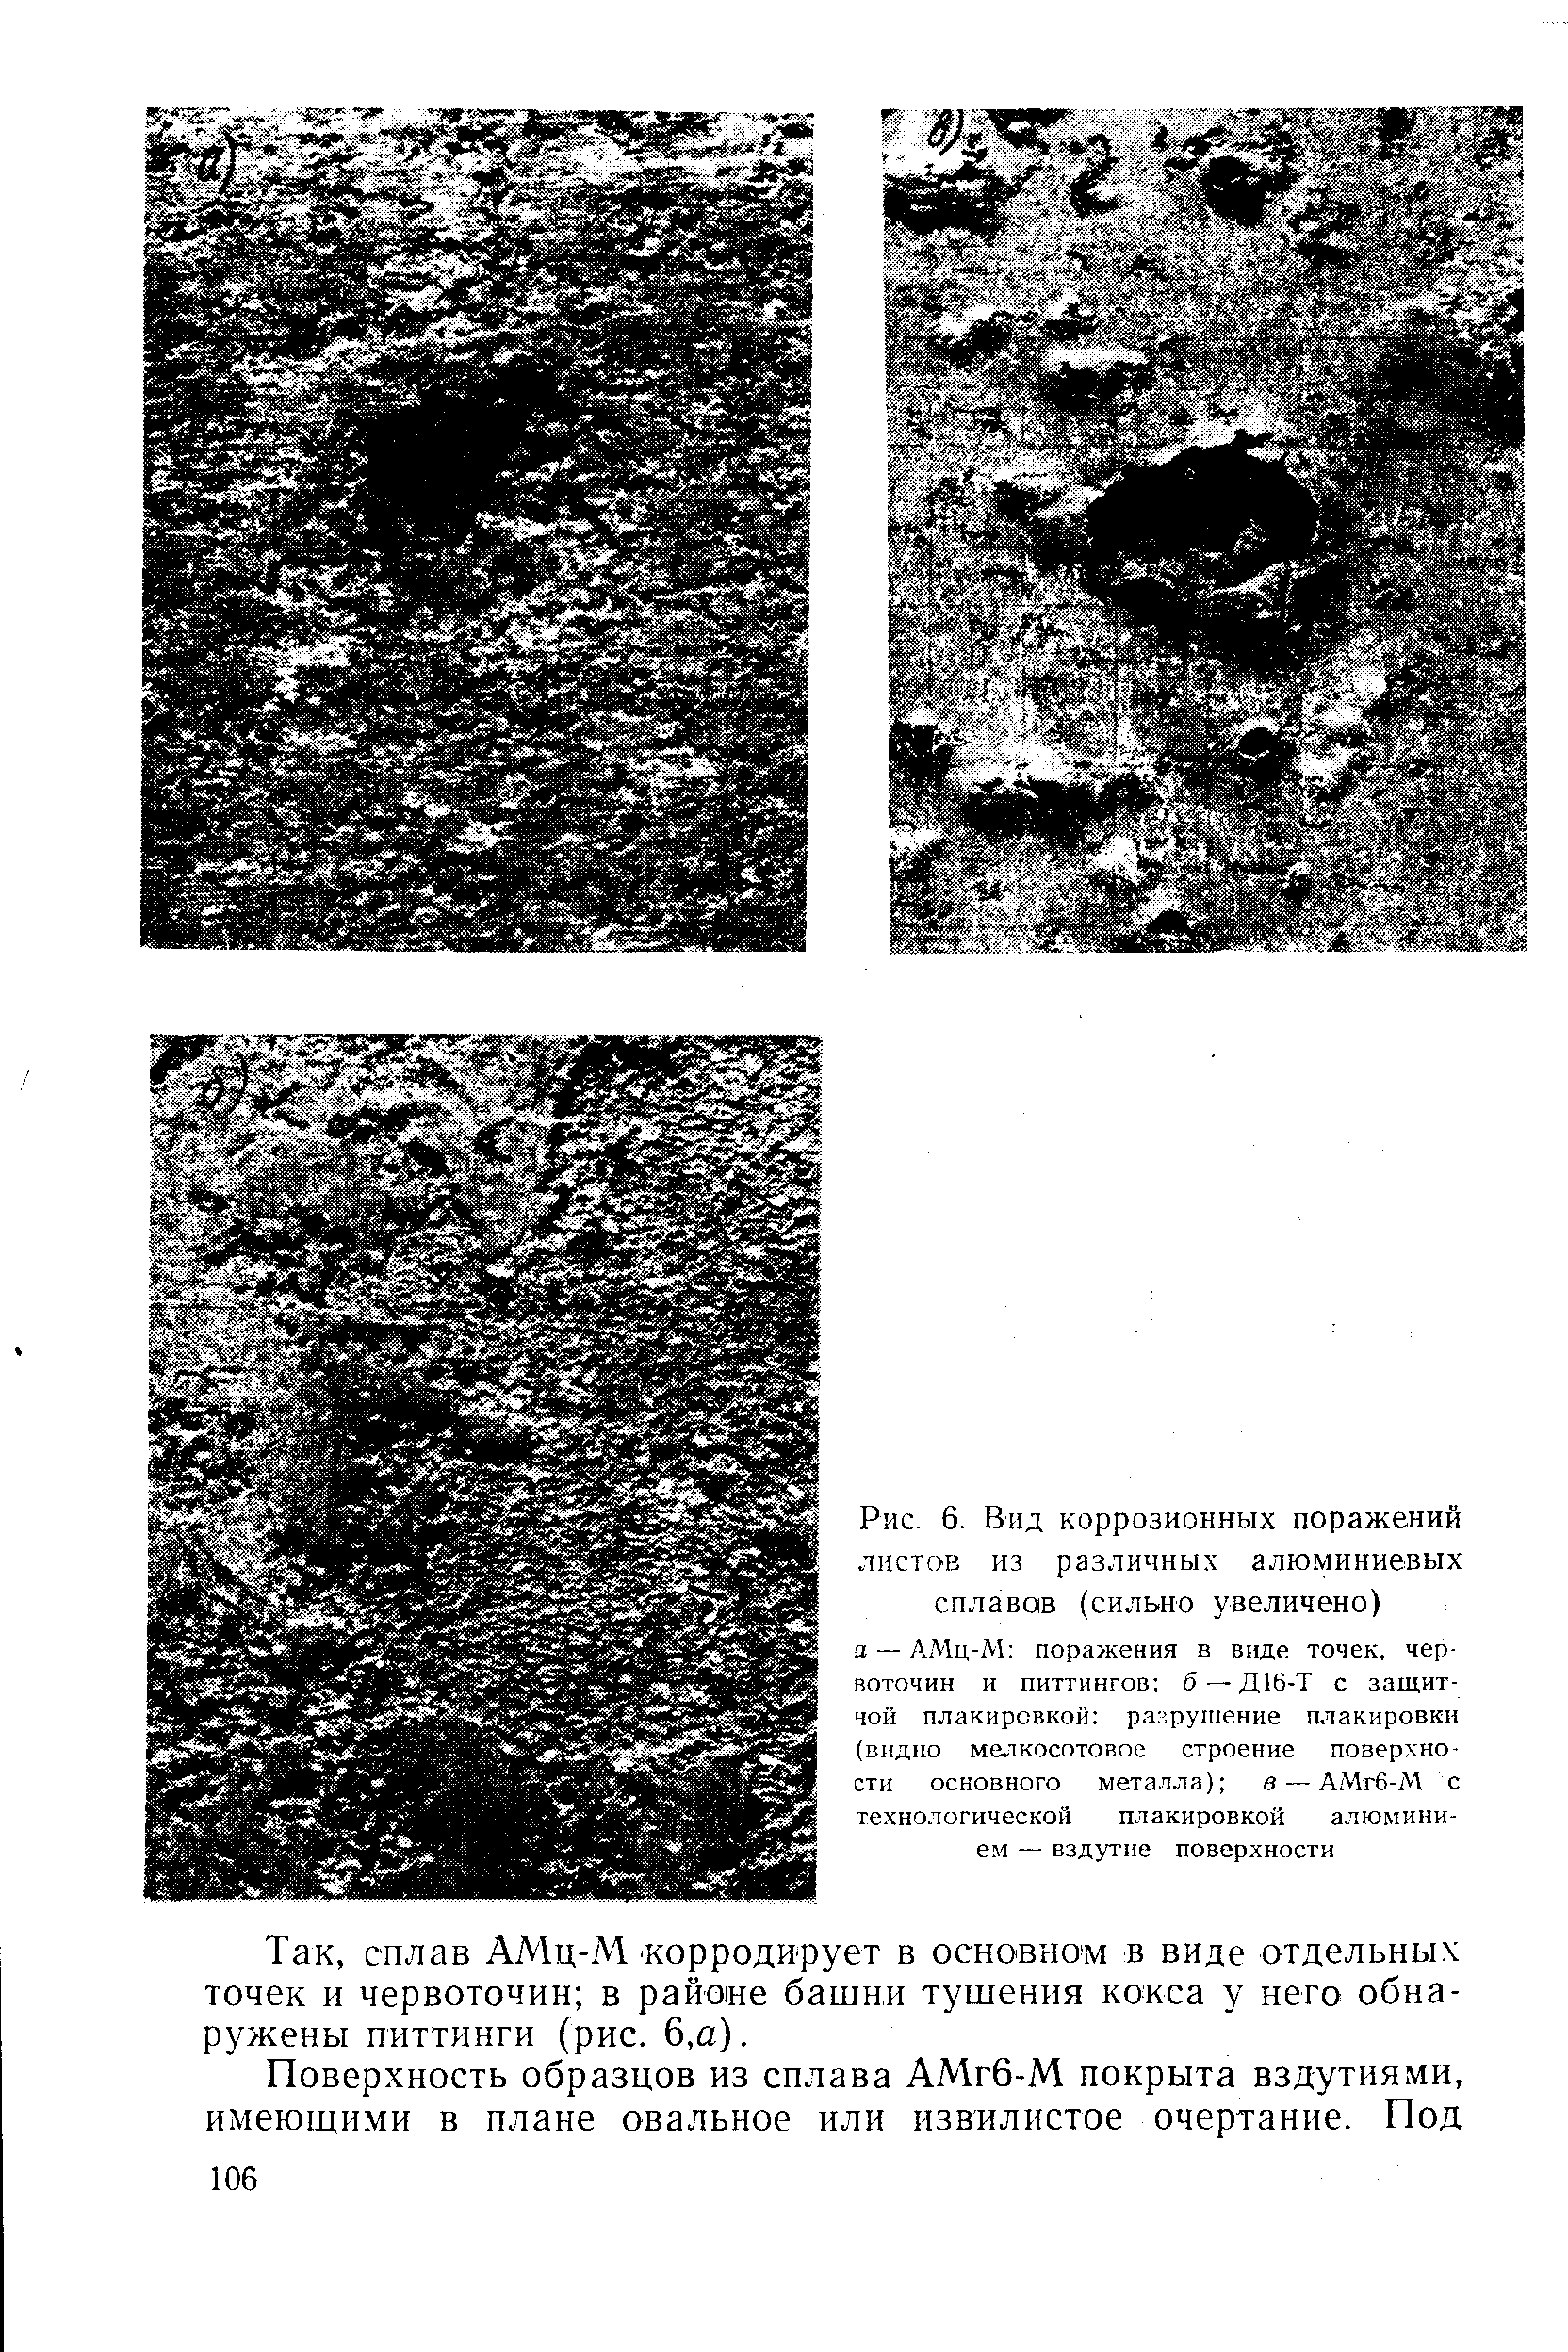 Рис. 6. Вид коррозионных поражений листав из различных алюминиевых сплавав (сильно увеличено)
